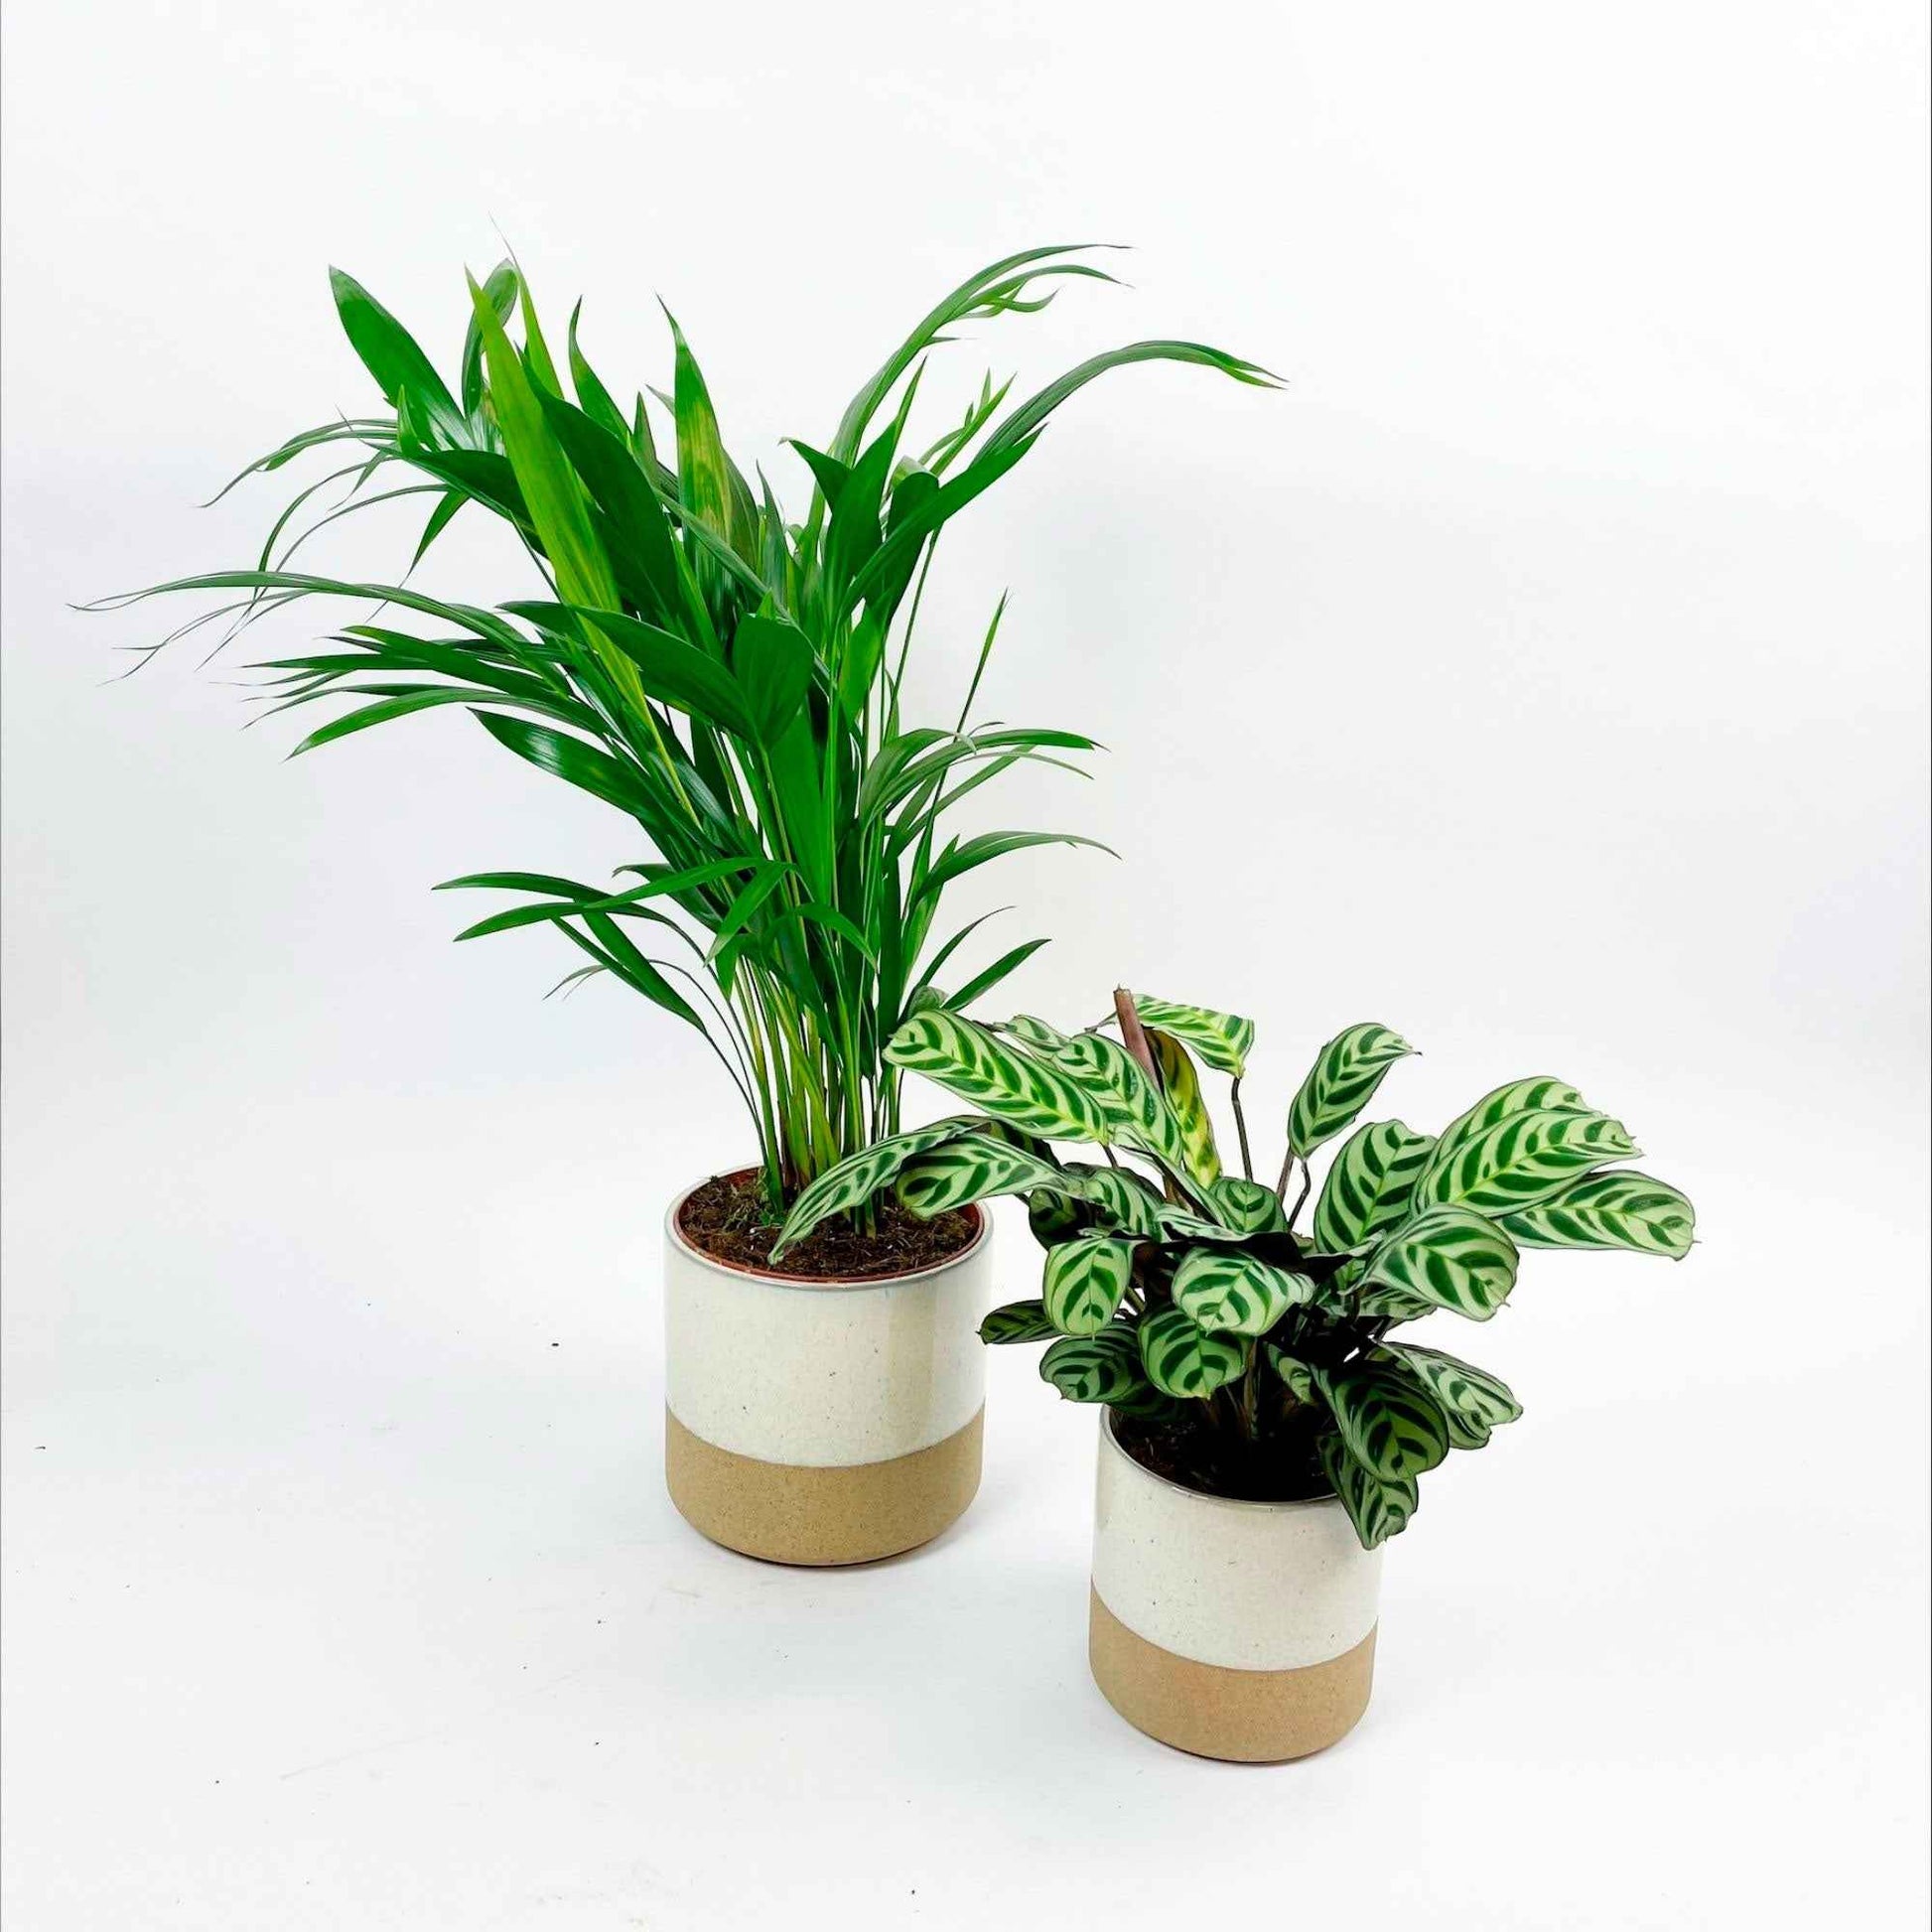 1x Arecapalme 'Dypsis lutescens' + 1x Gebetspflanze, inkl. Ziertöpfe, weiß - Kombinationen und Sets